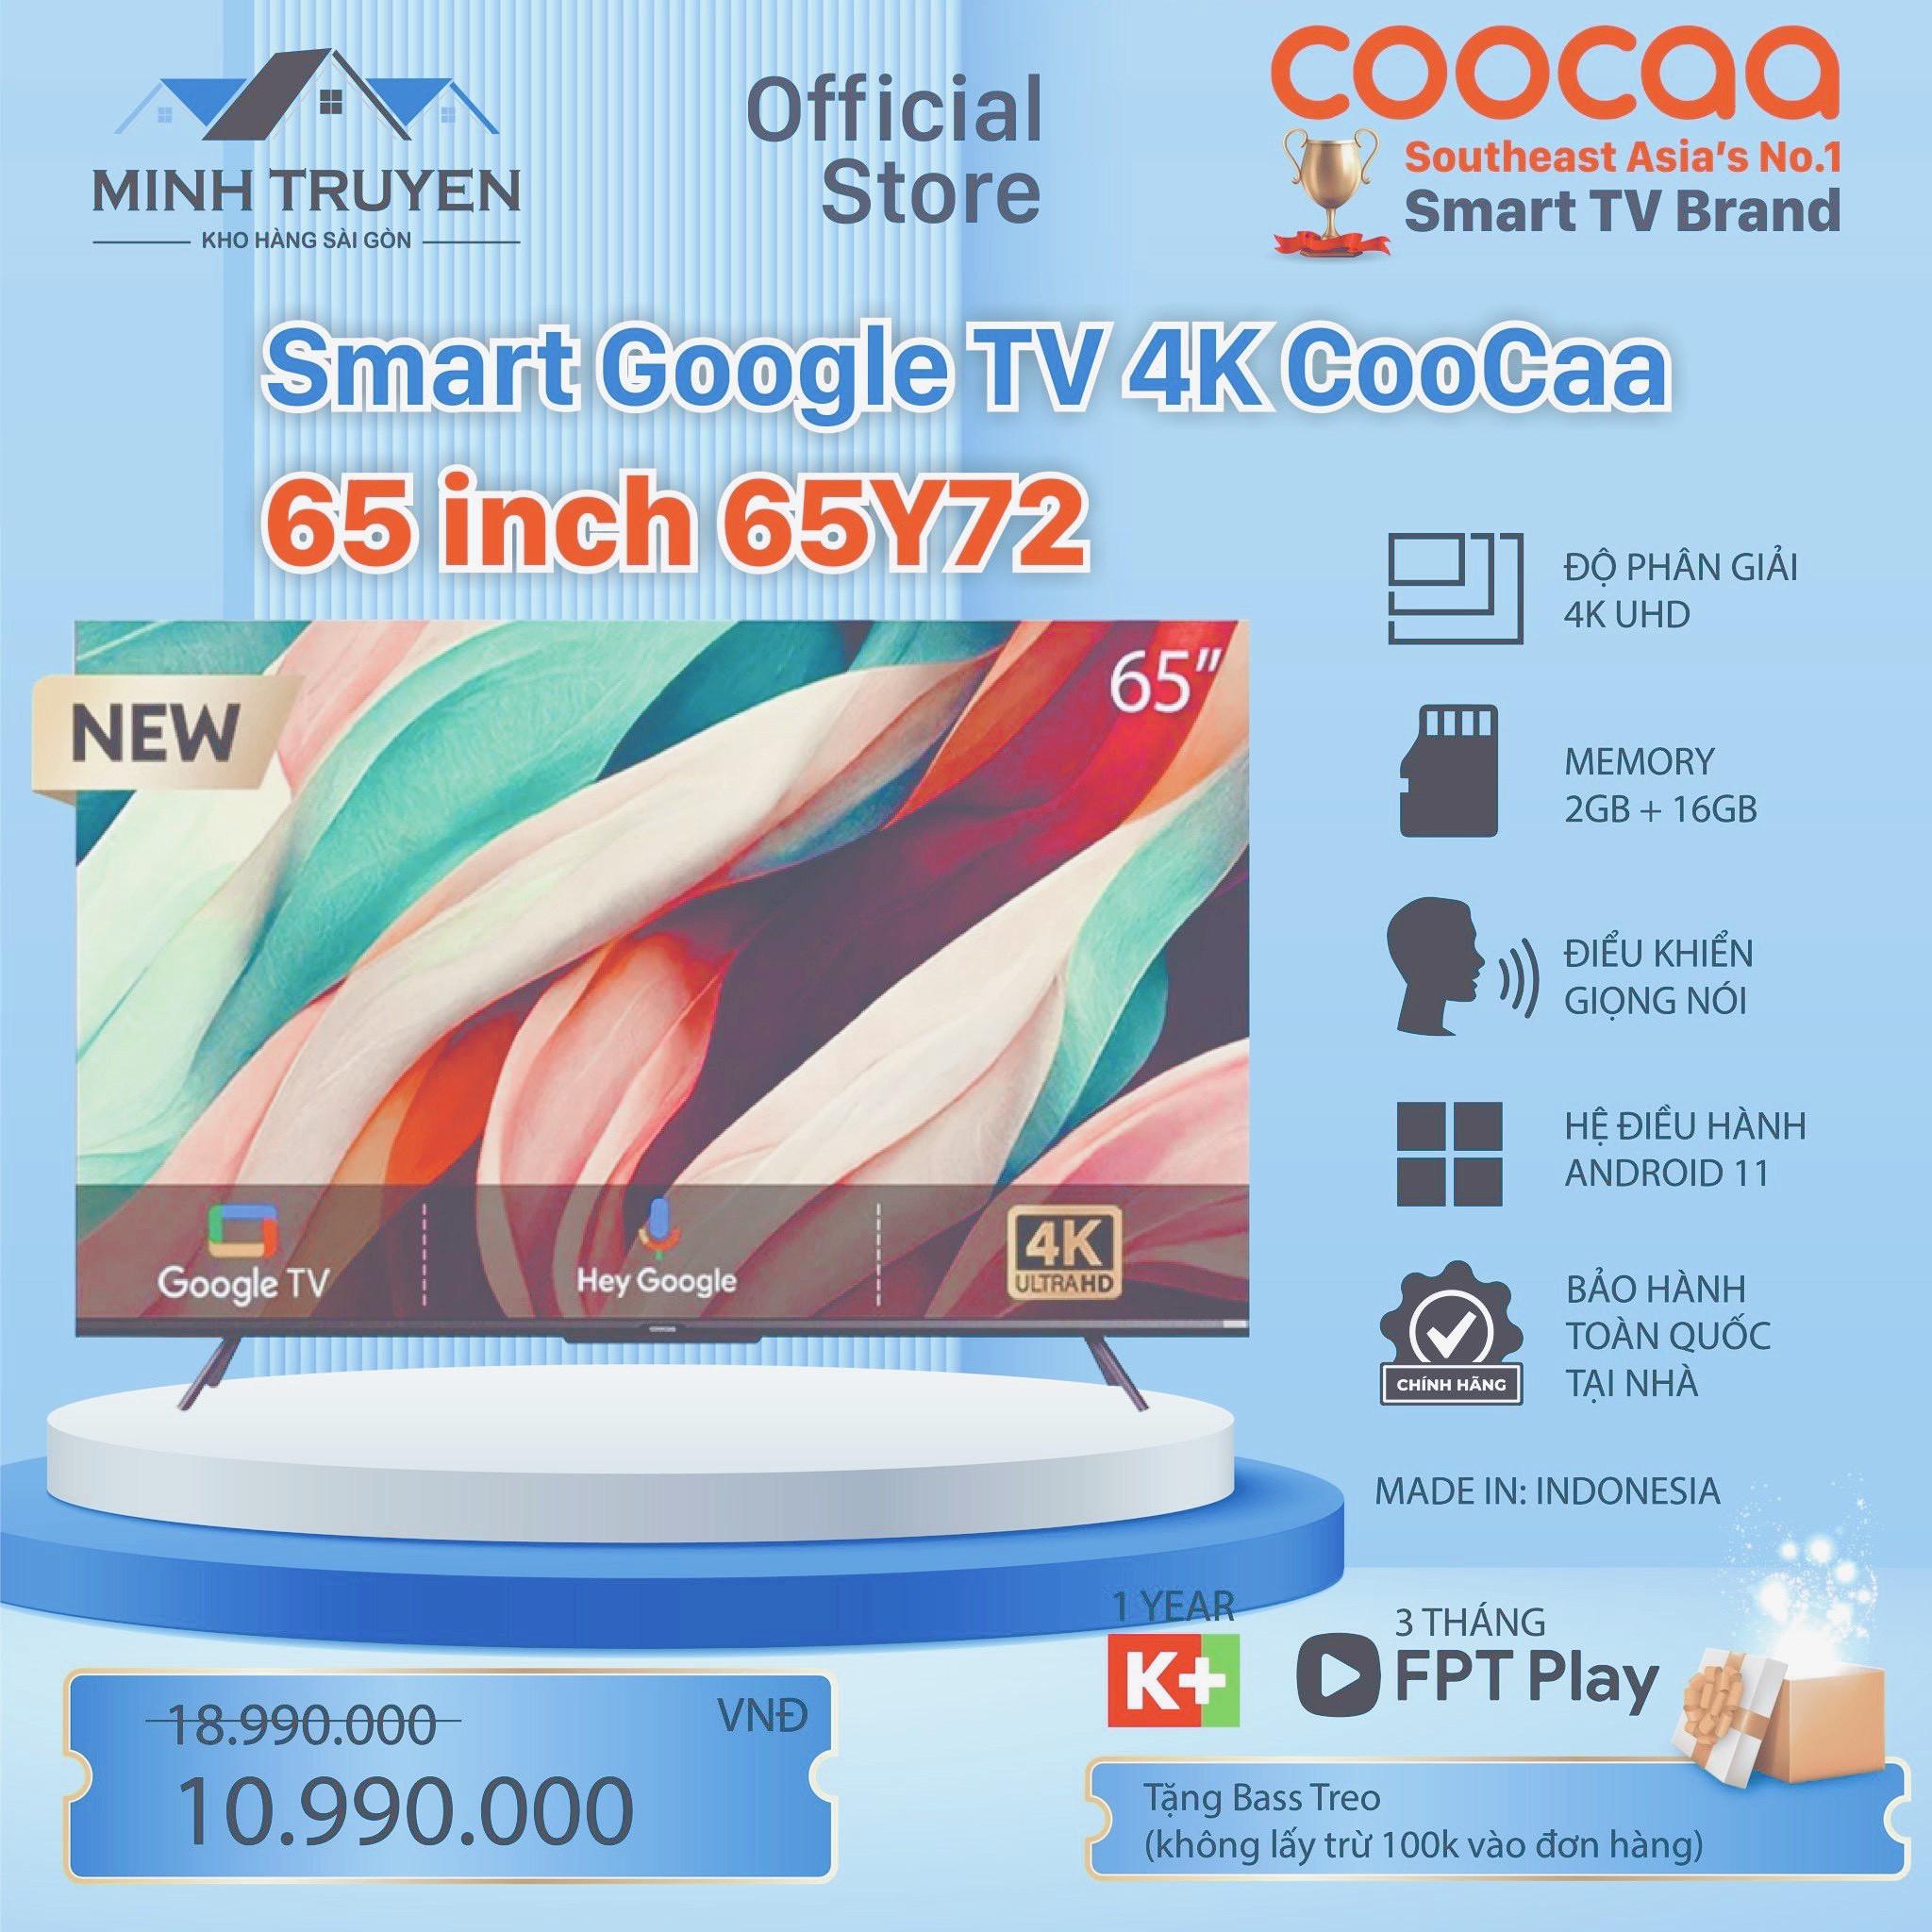 GoogleTV Tivi Coocaa  4K 65 inch 65Y72  - CHÍNH HÃNG 100%